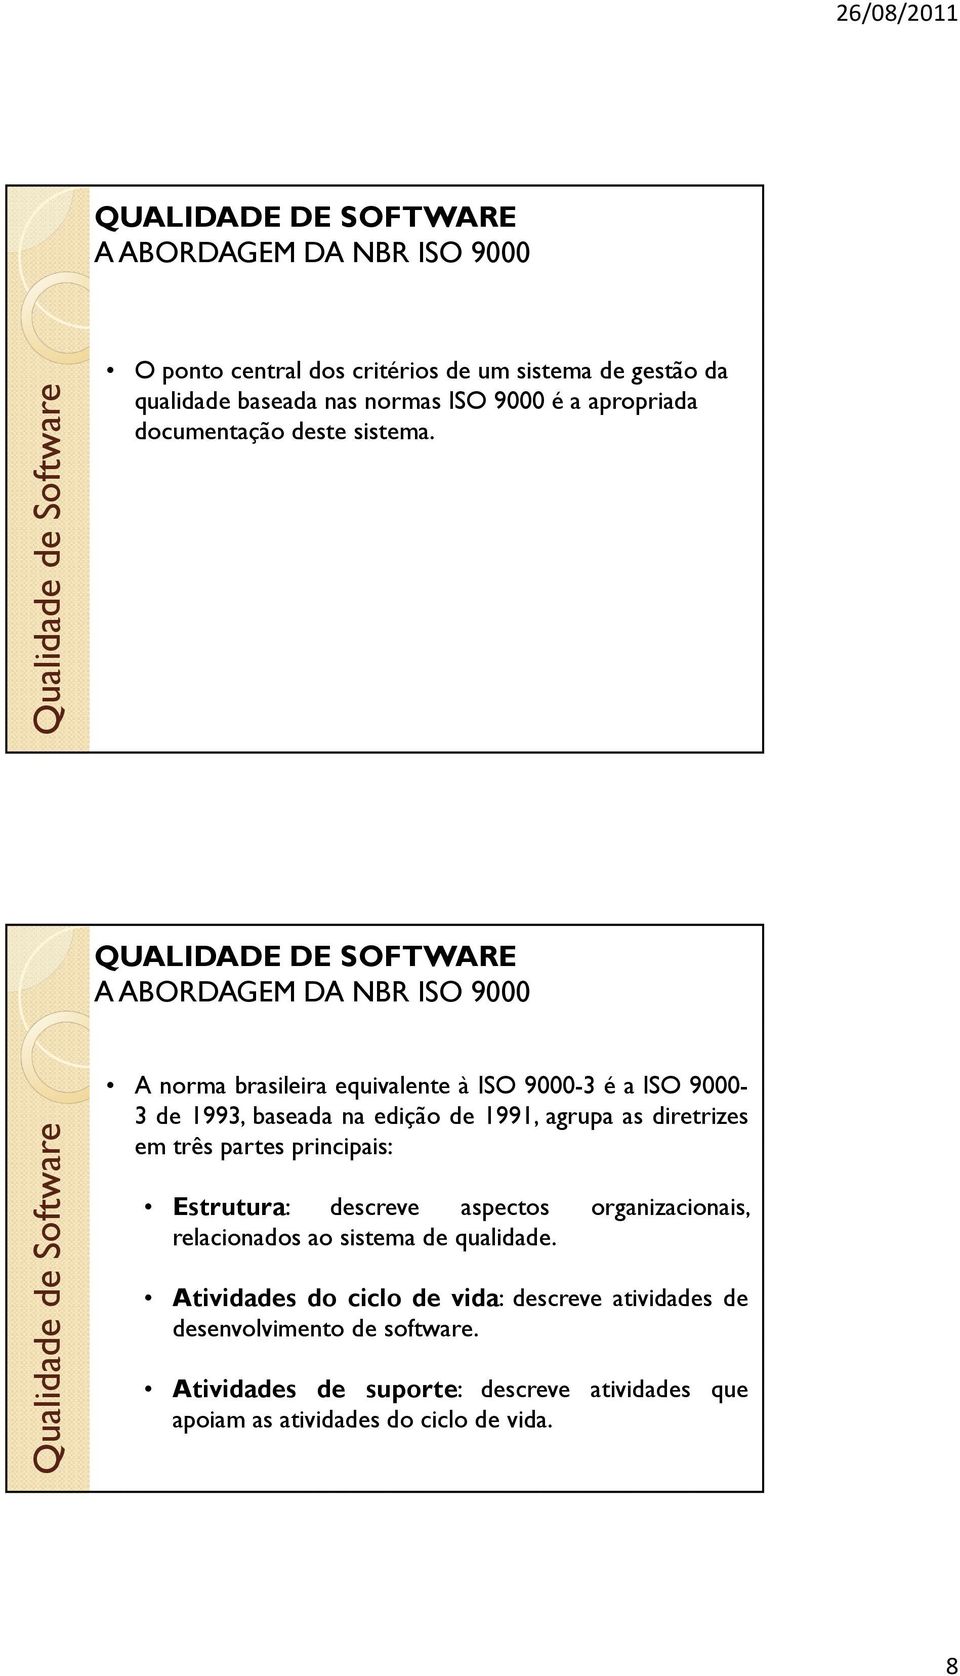 A norma brasileira equivalente à ISO 9000-3 é a ISO 9000-3 de 1993, baseada na edição de 1991, agrupa as diretrizes em três partes